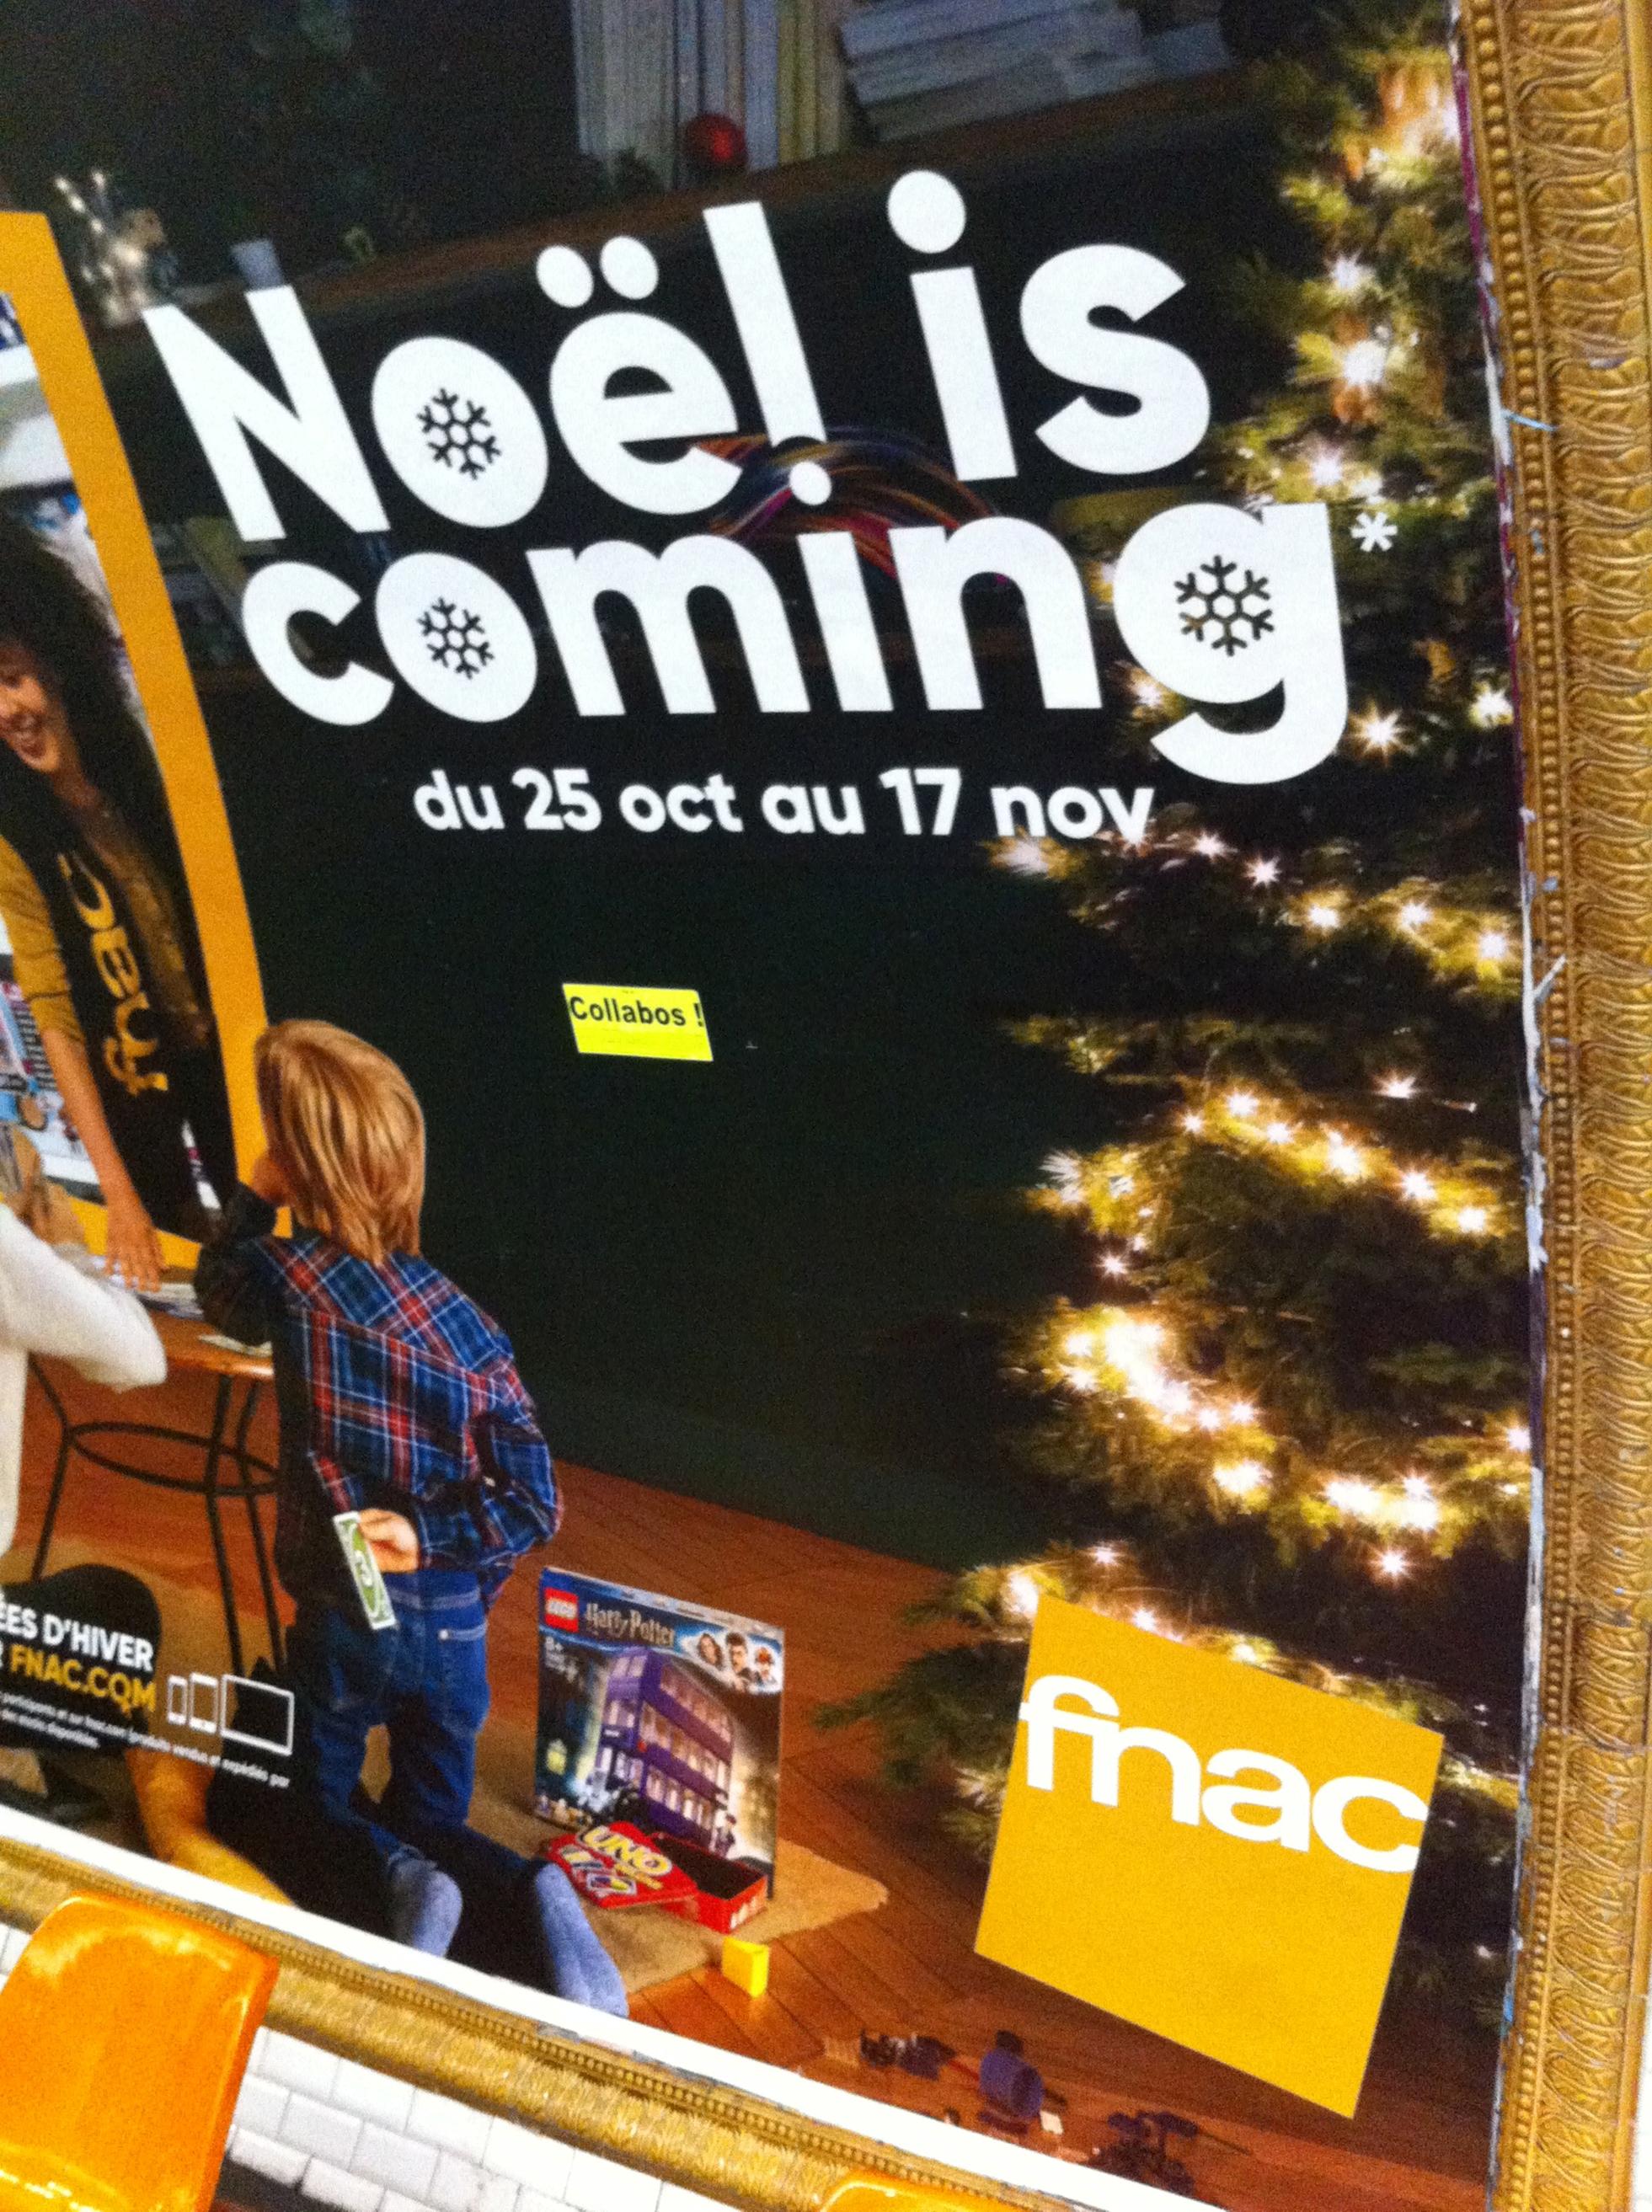 Fnac, Noel is coming